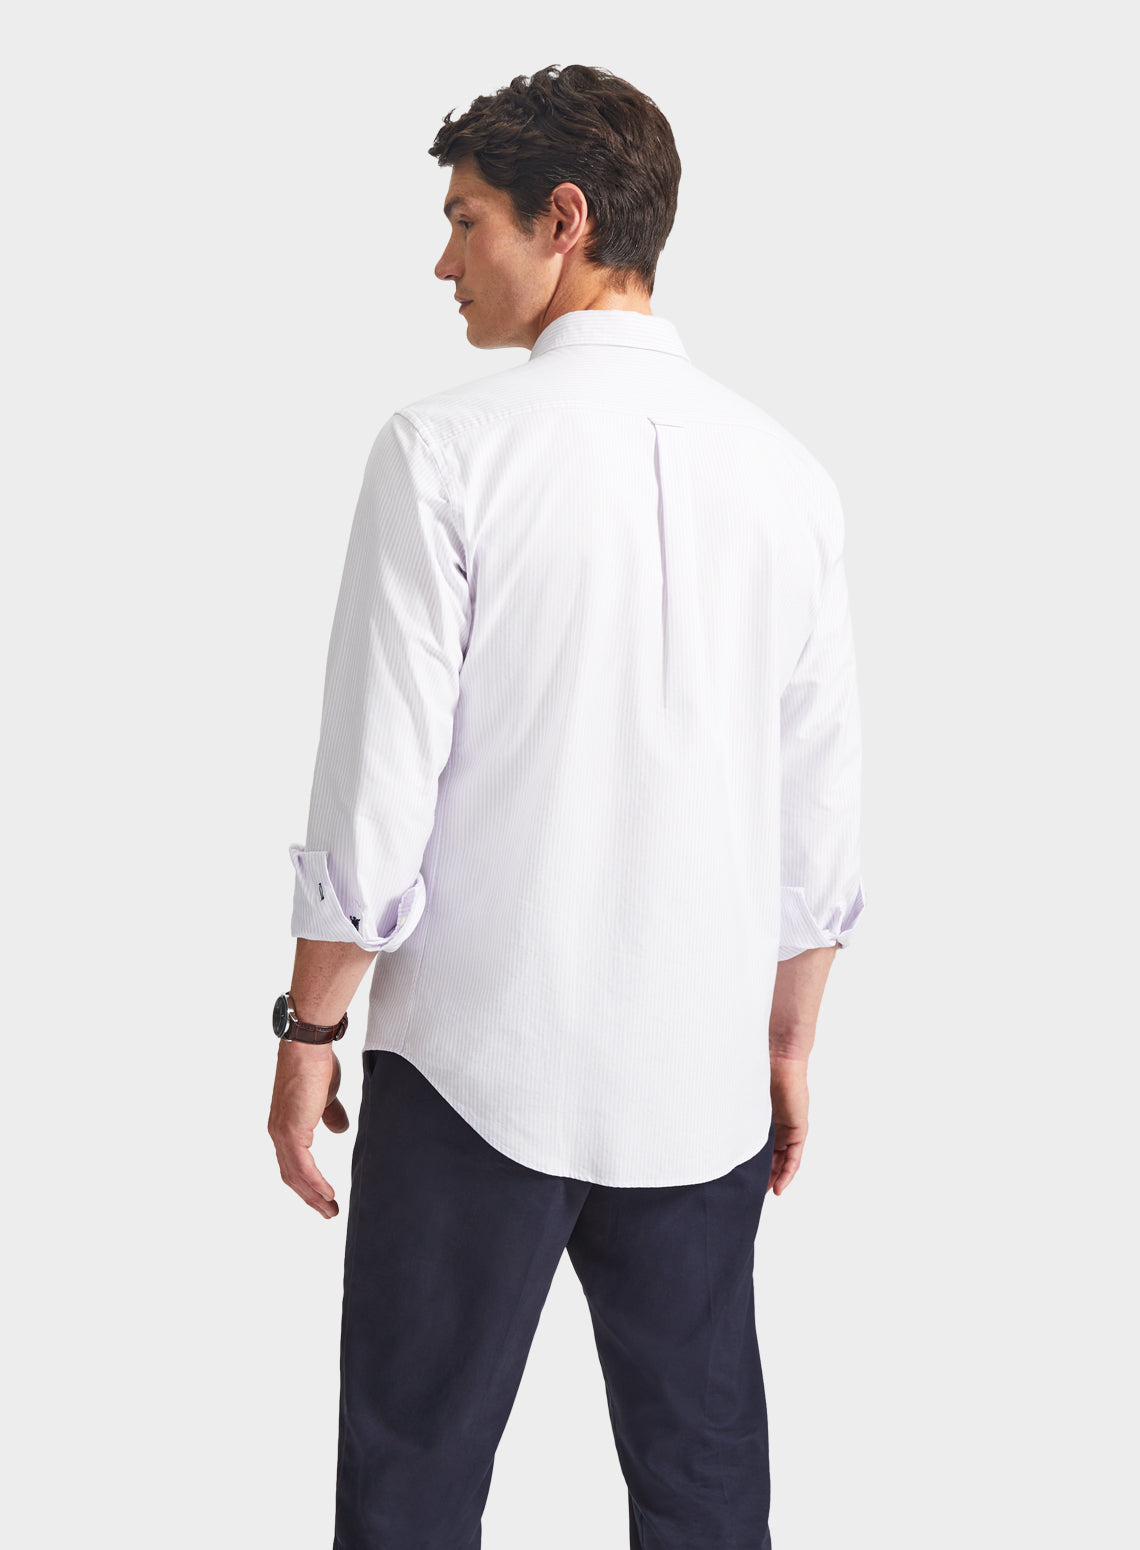 Button Down Oxford Shirt - Lilac Stripe